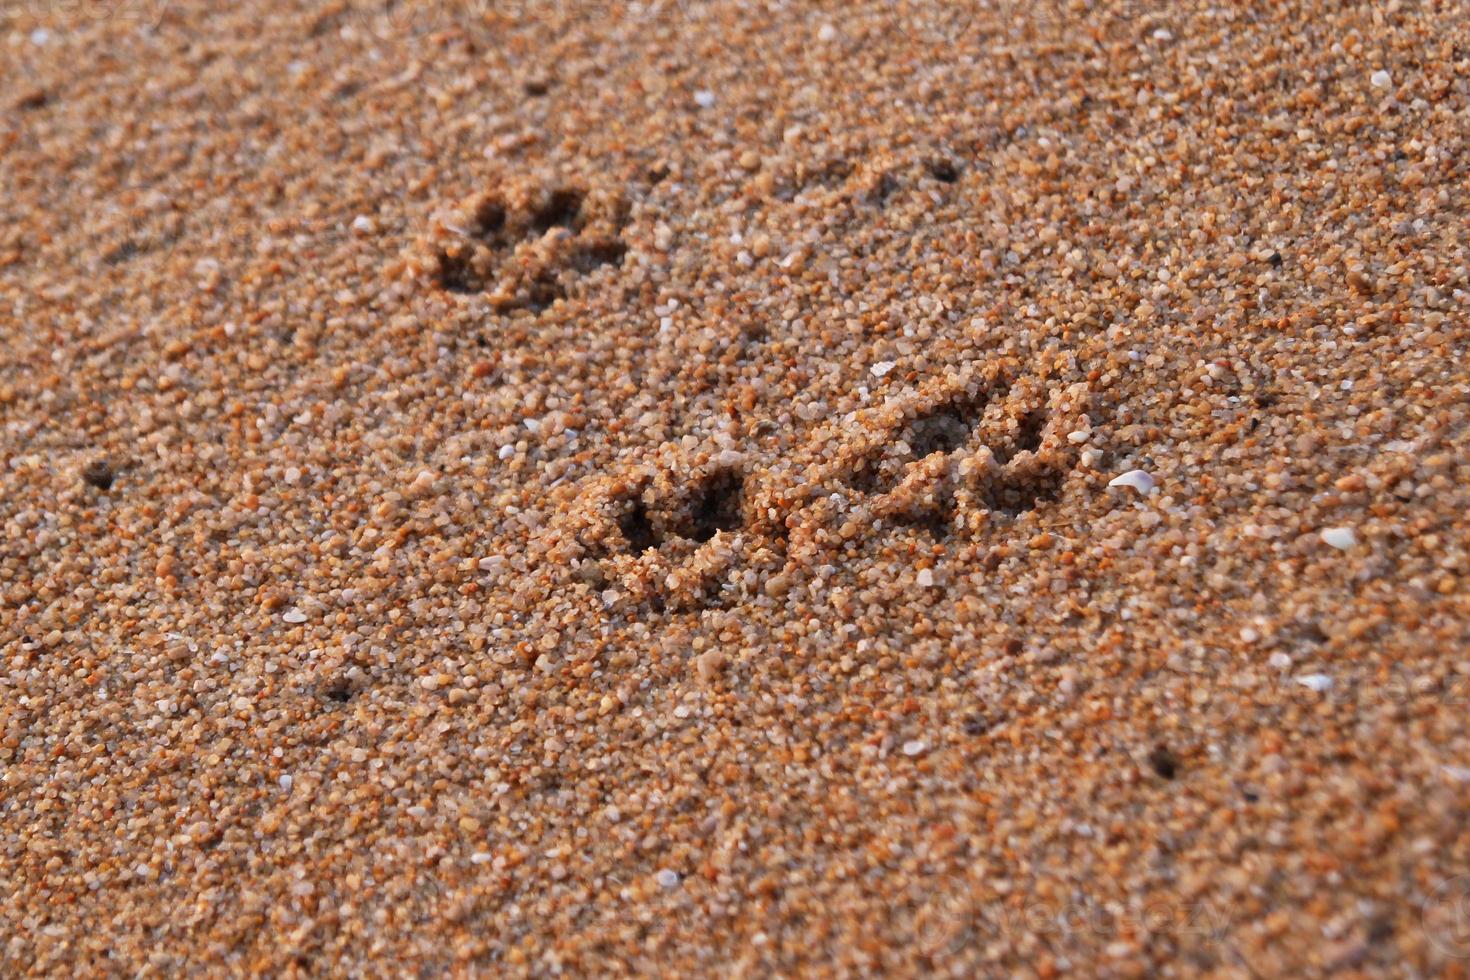 voyage à l'île de phuket, thaïlande. les empreintes de chien sur la plage de sable. photo